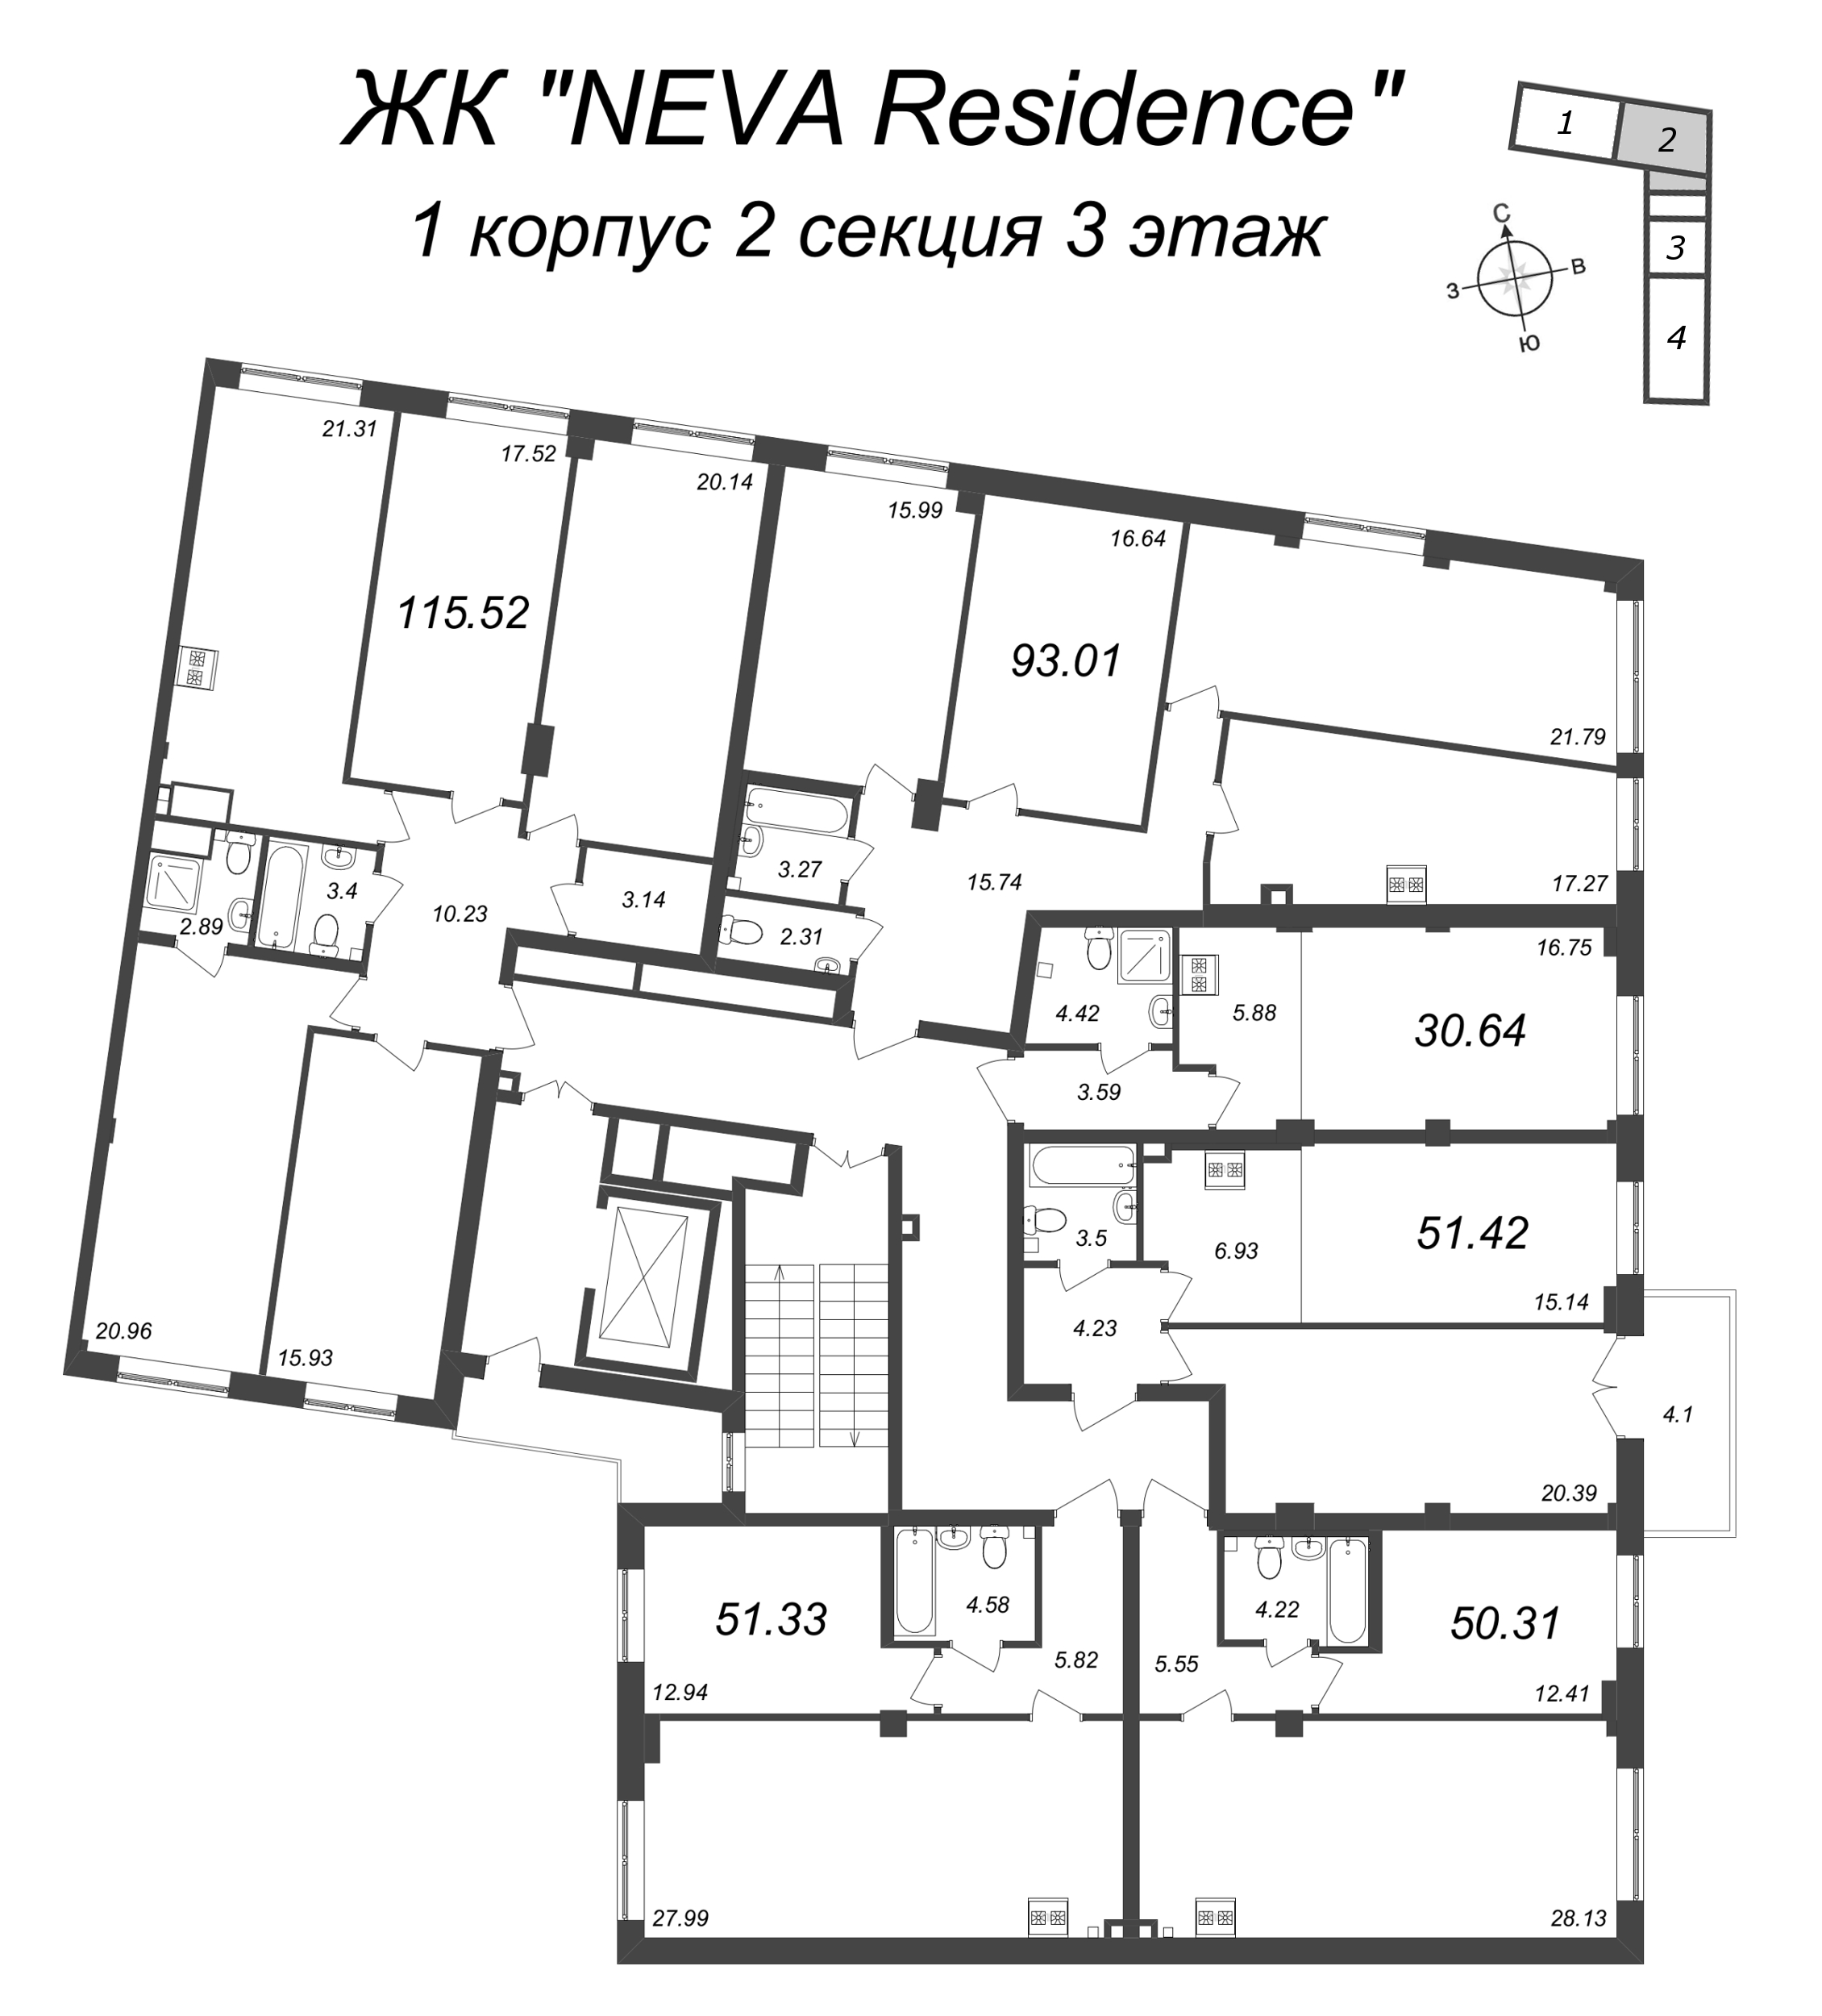 5-комнатная (Евро) квартира, 115.52 м² в ЖК "Neva Residence" - планировка этажа